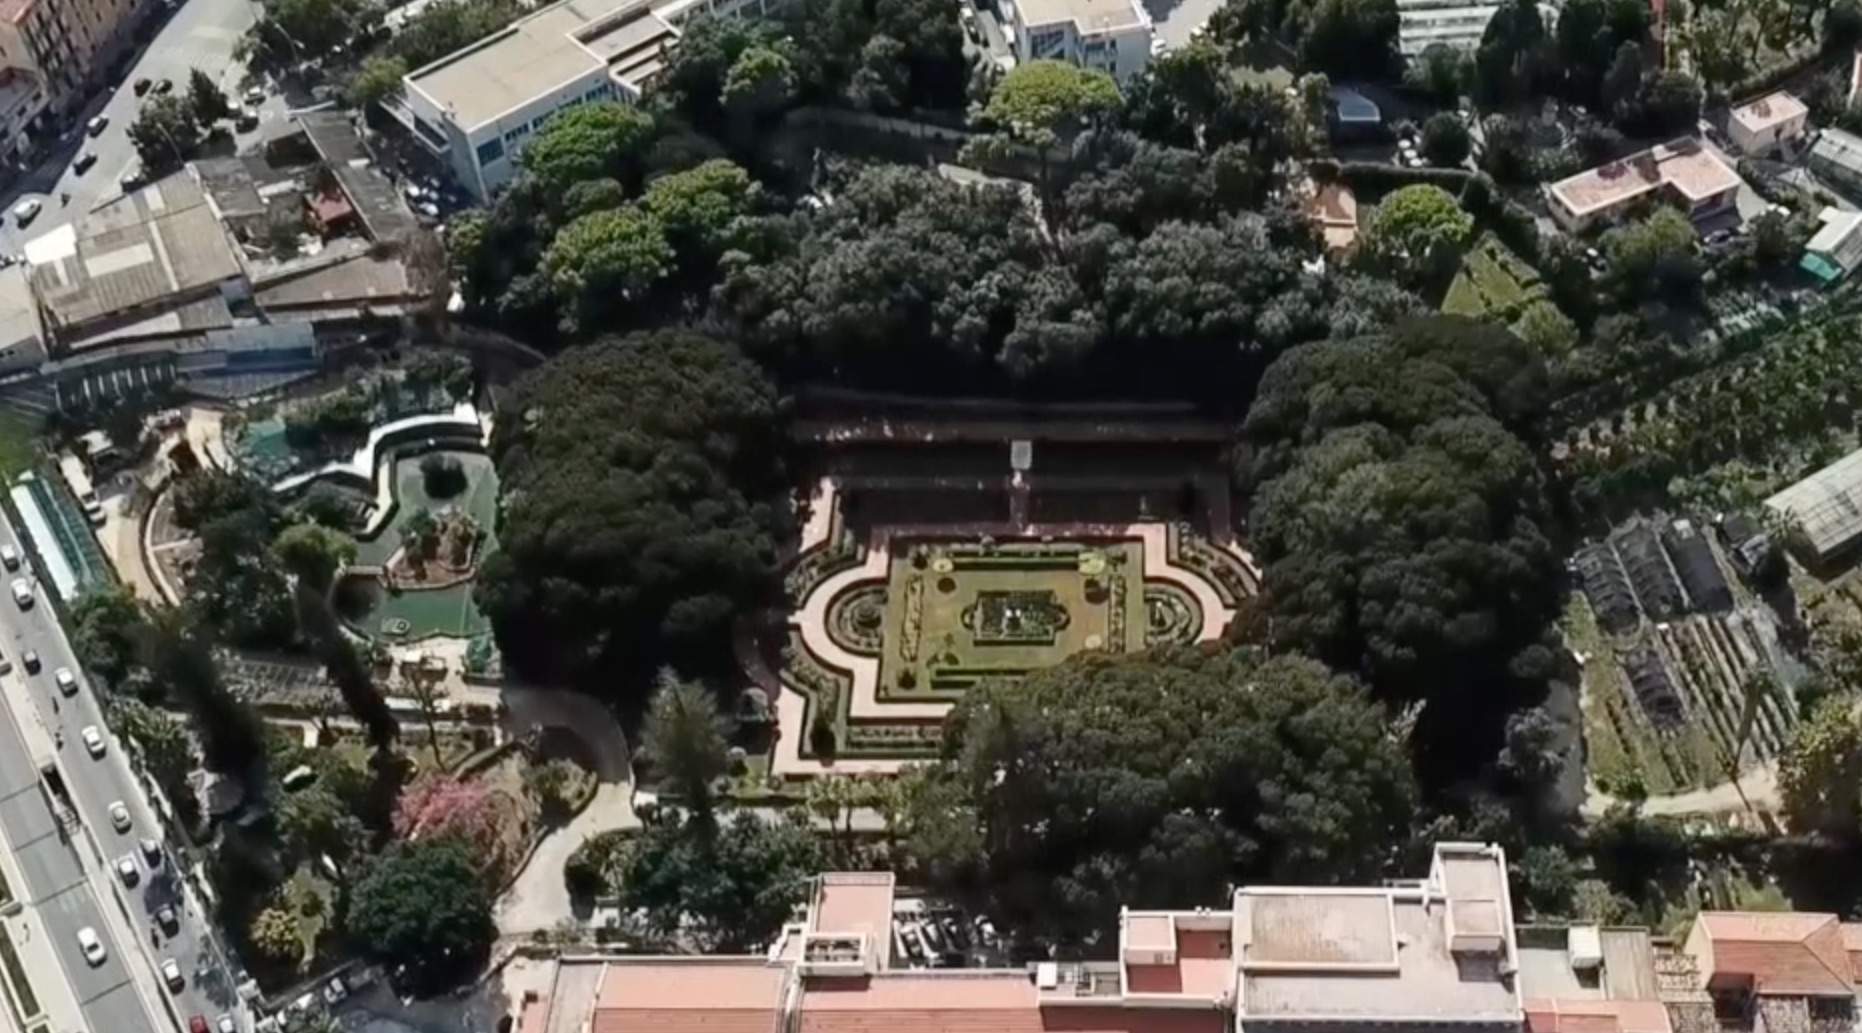 Parchi ville giardini Palermo